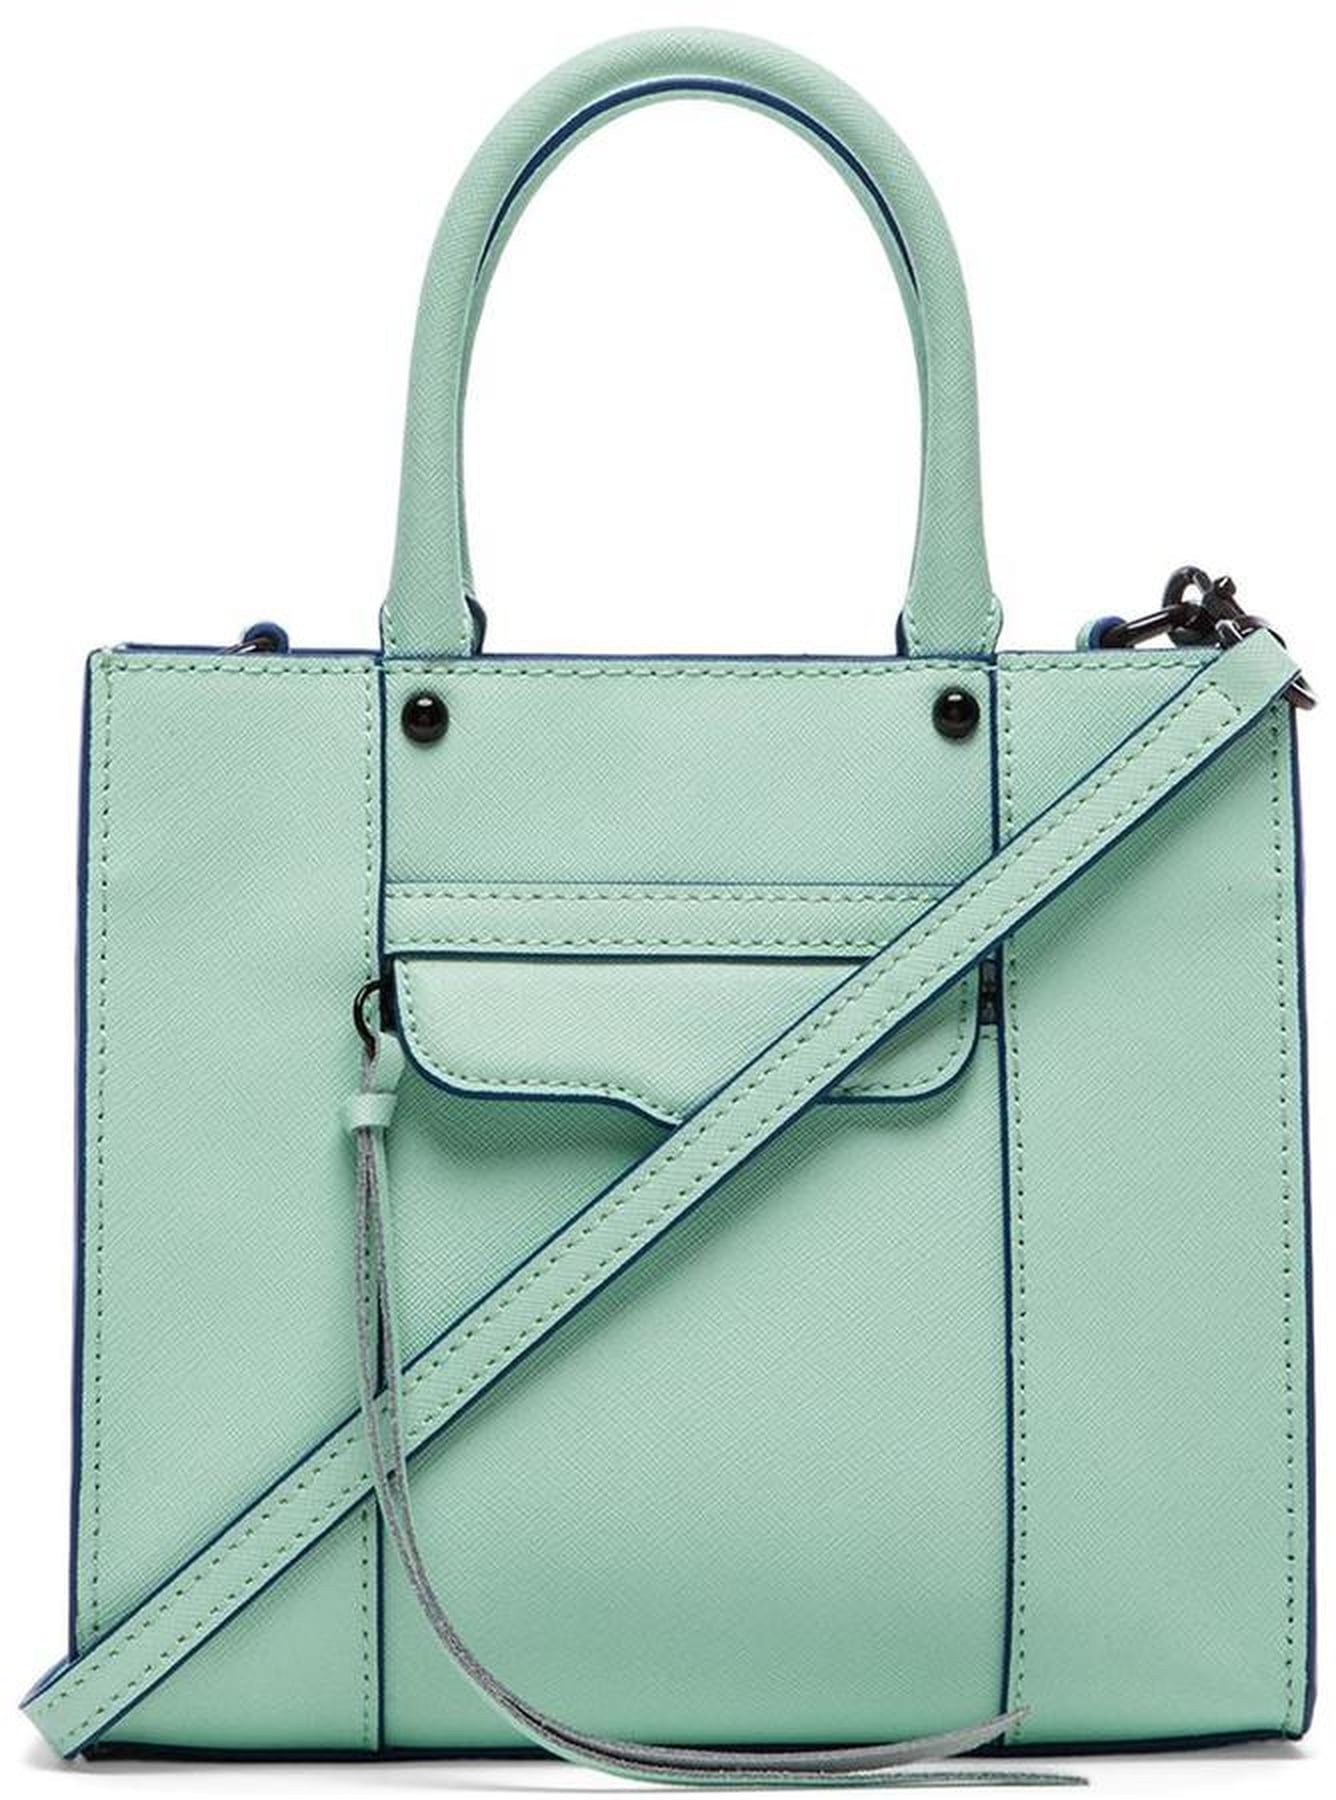 Spring Bag Trends 2015 | POPSUGAR Fashion